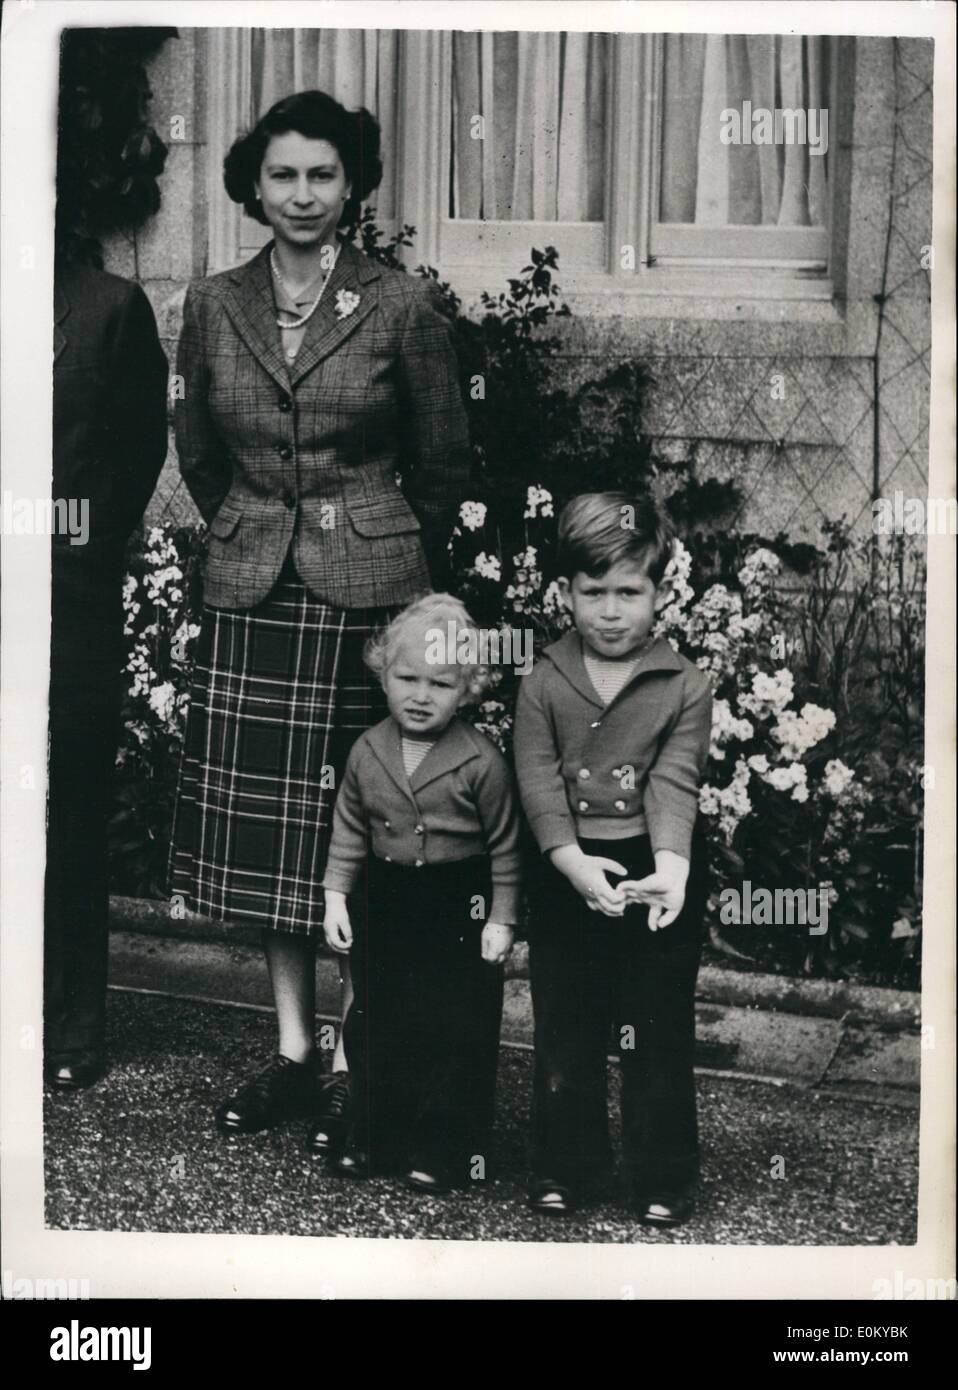 Sept. 09, 1952 - die Königin und ihre Kinder neue Bild von Balmoral: Foto zeigt neue Studie von ihrer Majestät der Königin mit ihren beiden Kindern Prinz Charles und Prinzessin Anne auf dem Gelände in Balmoral. Bild gerade in London erhalten. Stockfoto